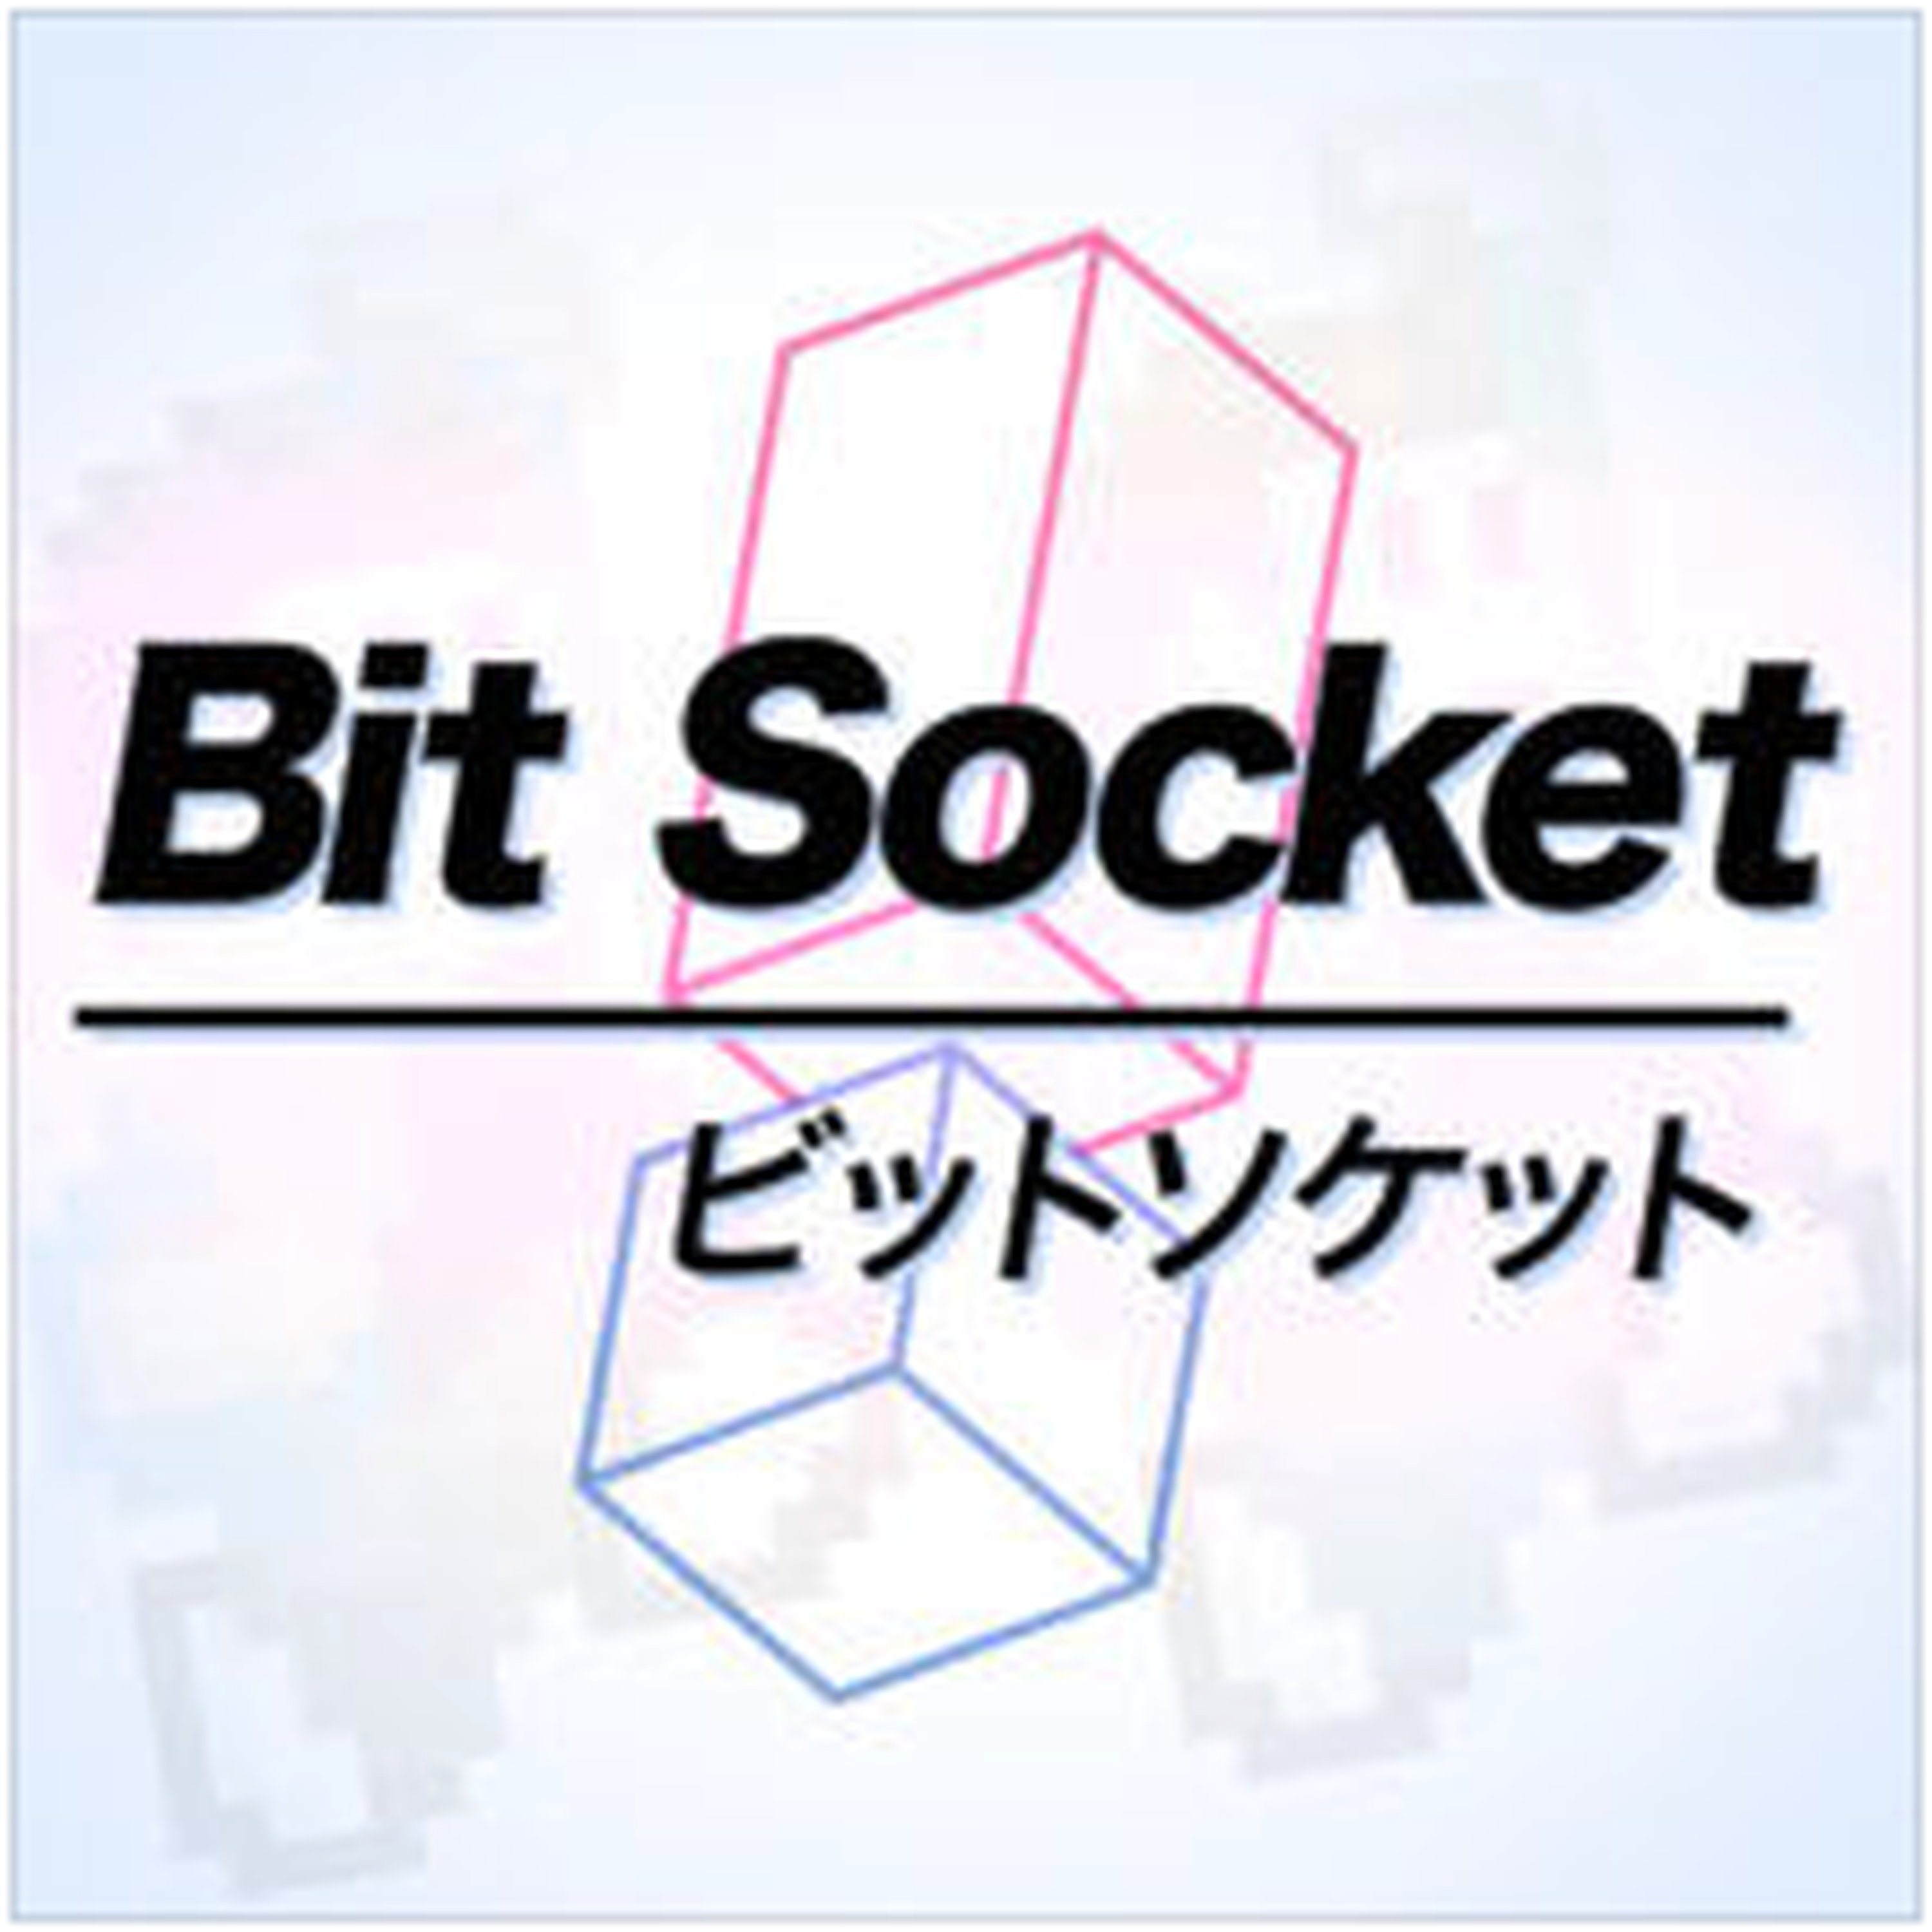 cover art for Bit Socket Trailer